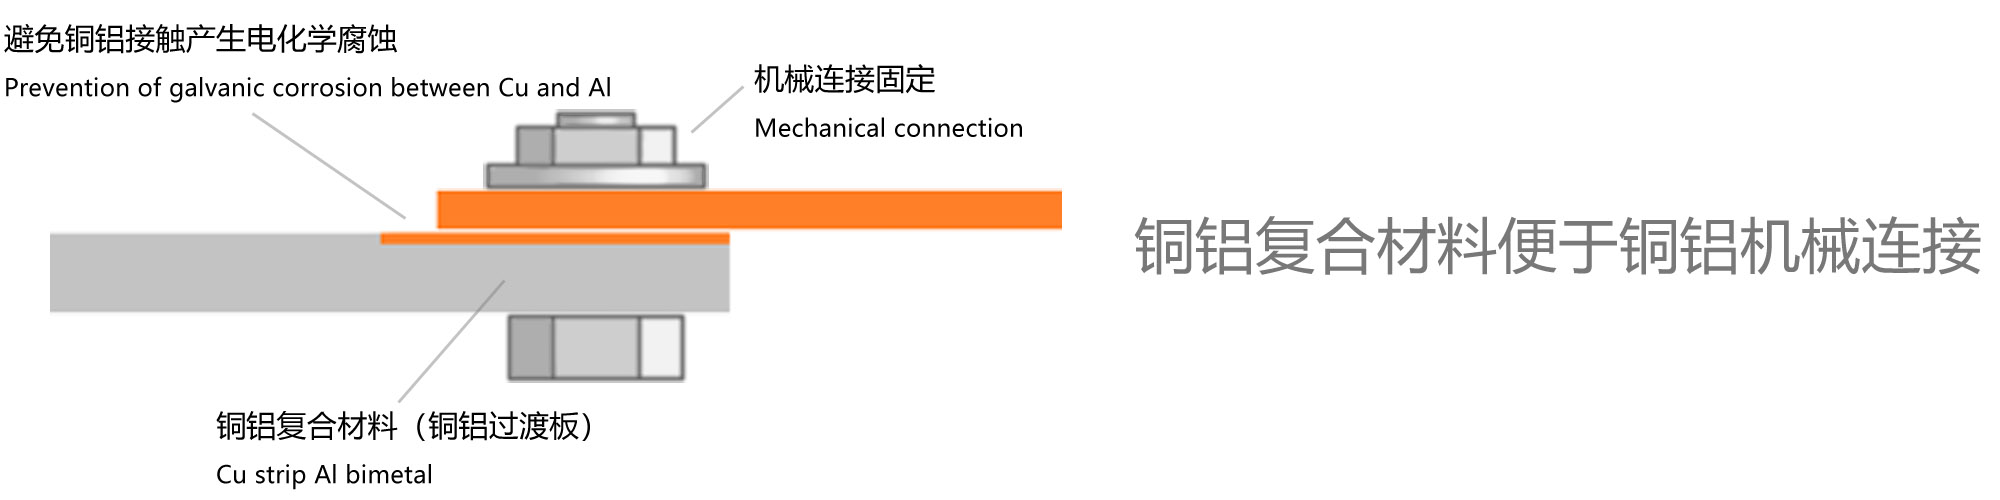 上海应撼 铜铝复合材料 机械连接